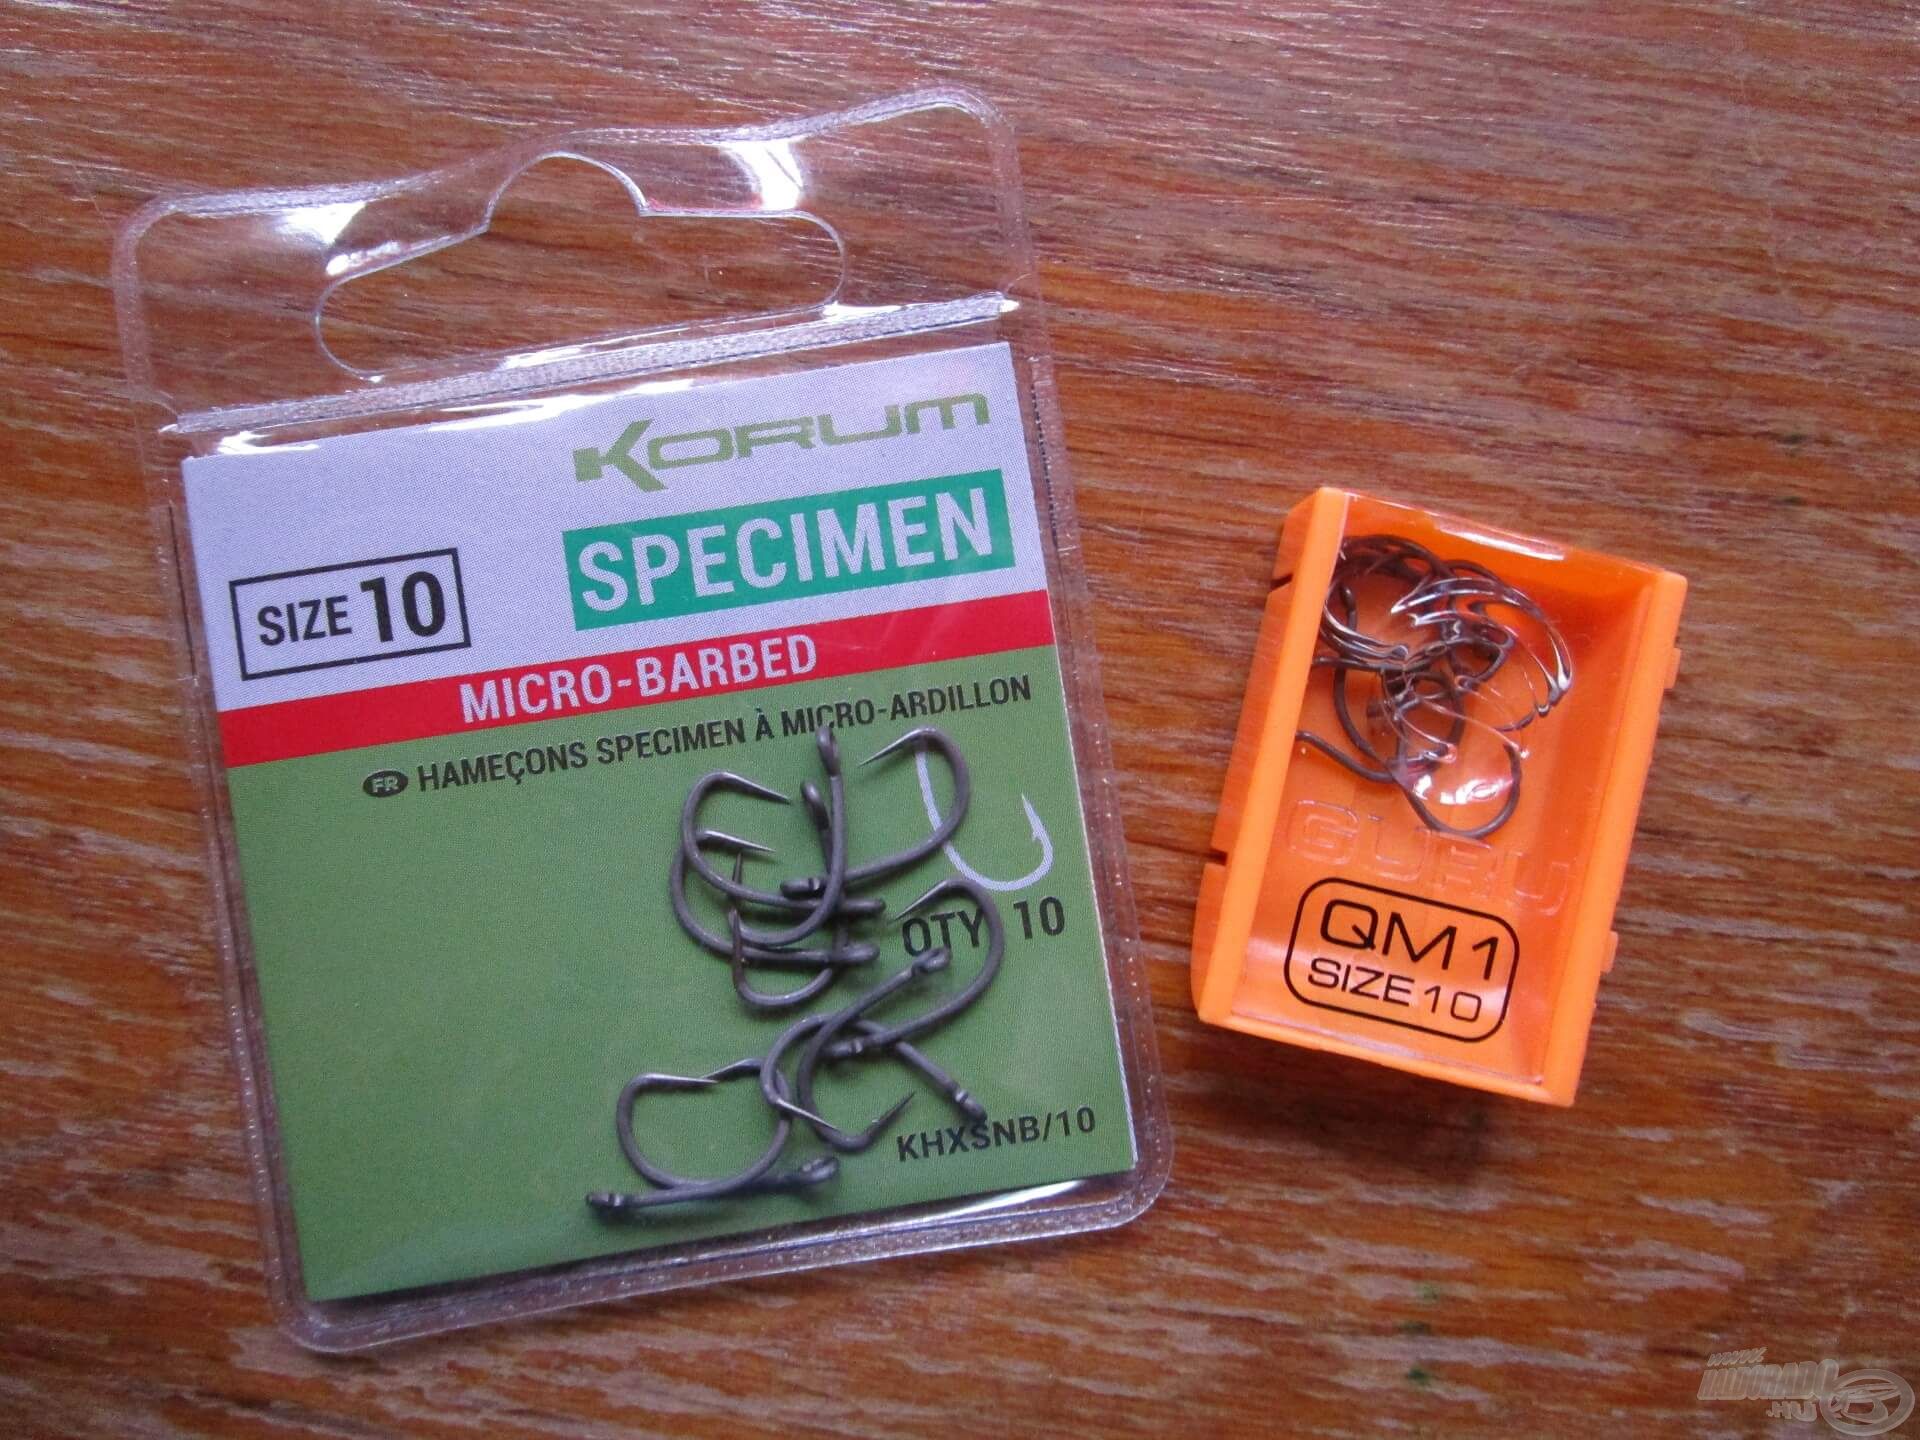 Ez a két horog a kedvencem. A Korum Specimen egy mikroszakállas, a GURU QM1-es pedig egy szakáll nélküli változat. Leggyakrabban a 10-es méreteket használom, főleg gumikukoricához